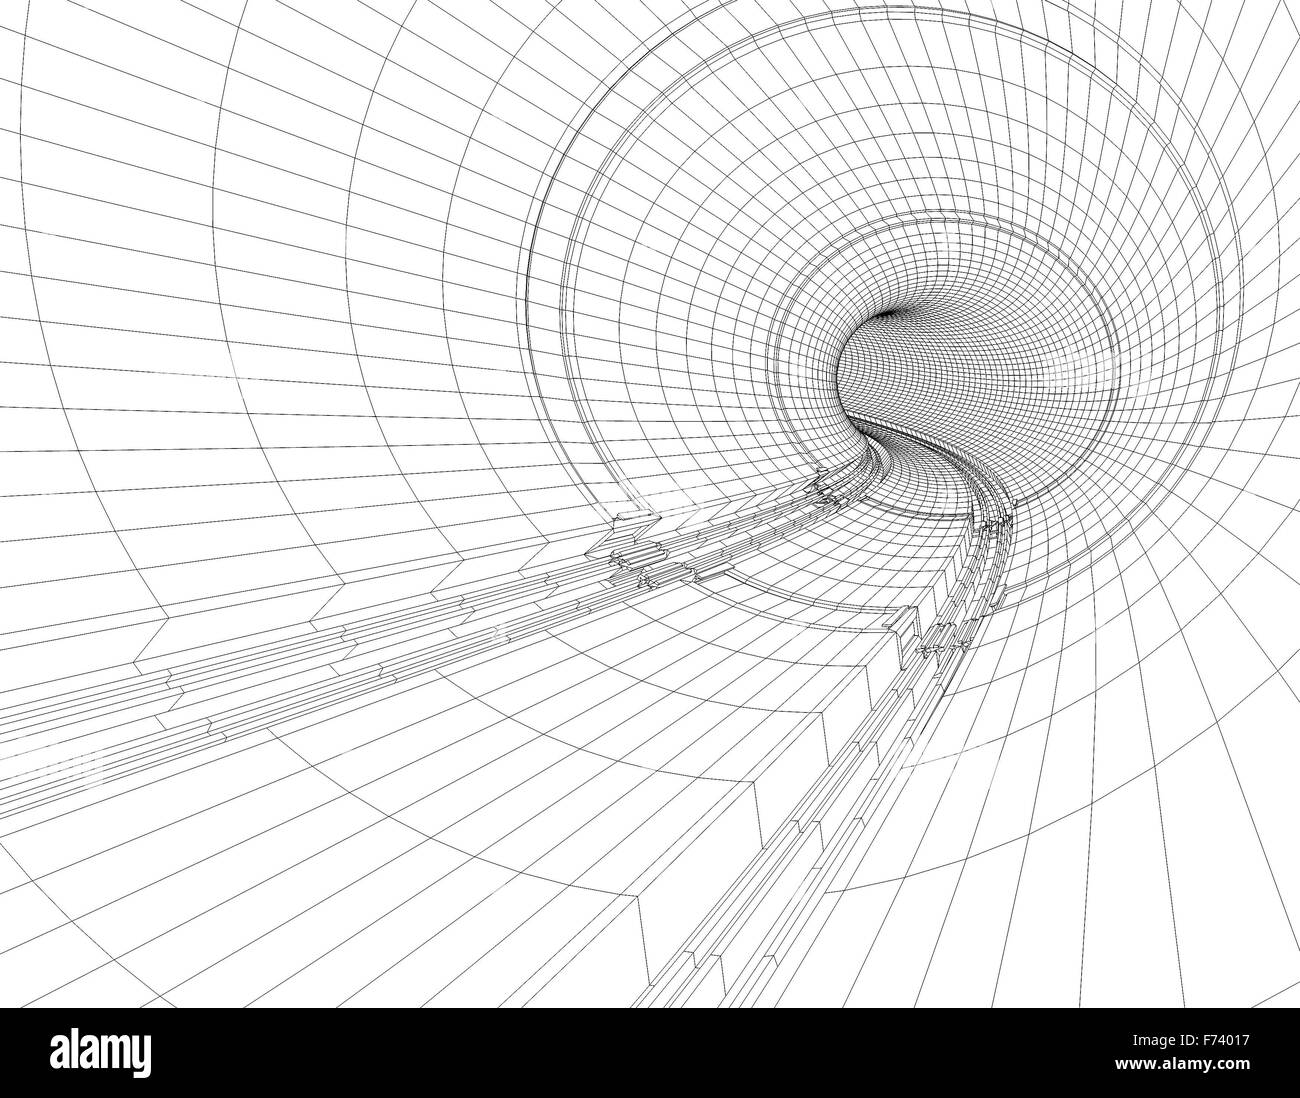 Abbildung der Zeichnungen eines Tunnel-Plans. Entwurf und Engineering-Konzept Stockfoto